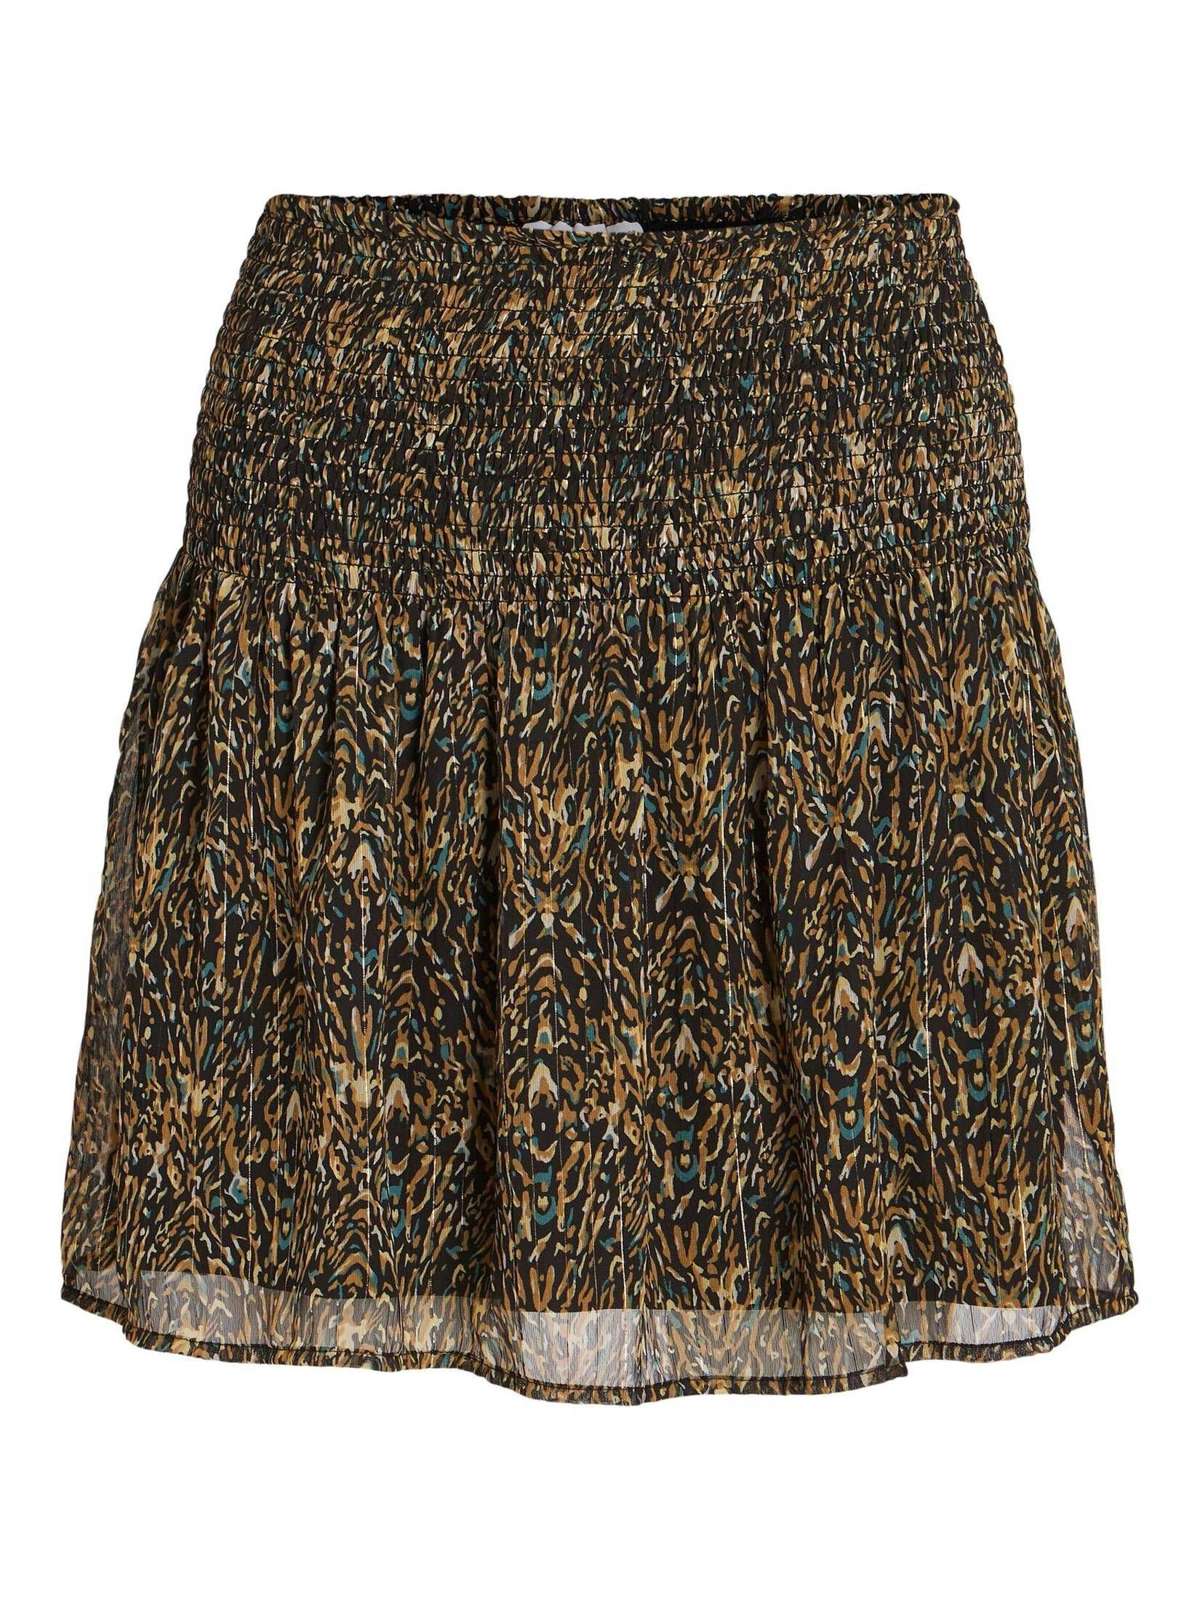 Плиссированная юбка женская мини-юбка (1 шт.)